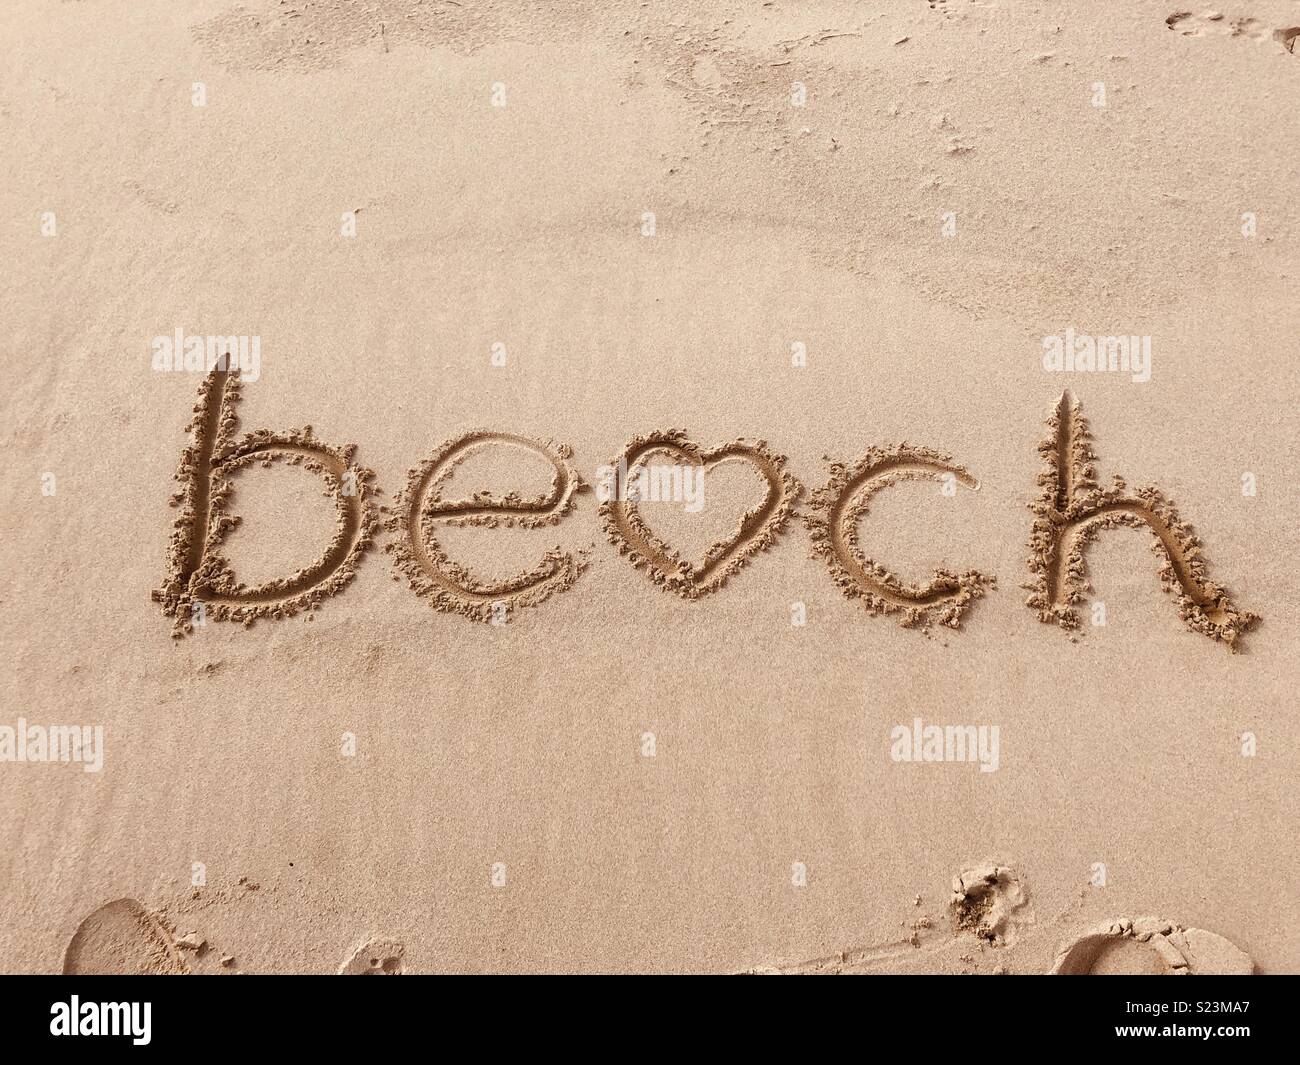 Strand in den Sand am Strand Theddlethorpe geschrieben, sonnigen Tag Zeit auf meine Hände und wer nicht am Strand leben. Stockfoto